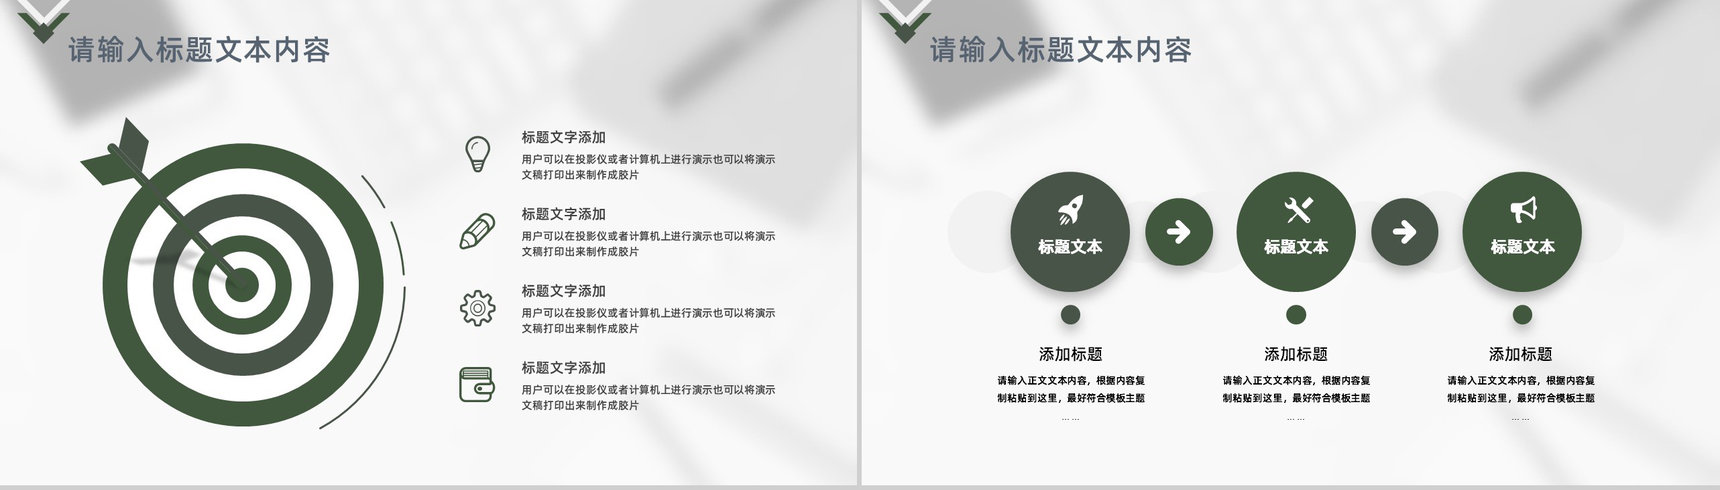 小清新学生会部长竞选宣言个人简历工作汇报演讲稿PPT模板-7